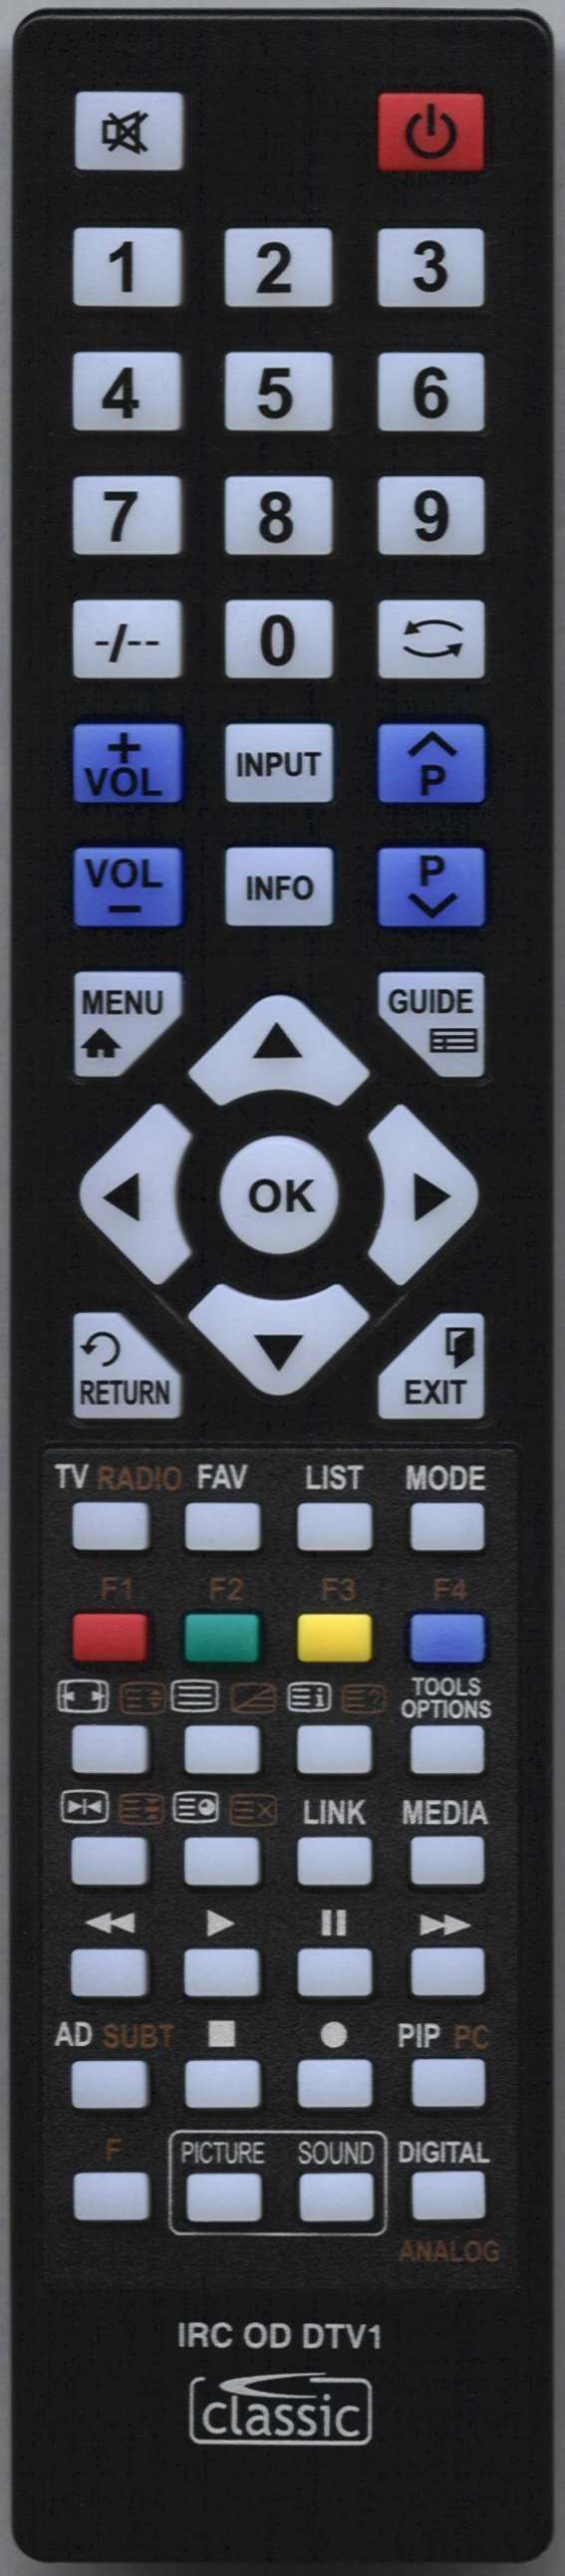 LG AKB74475490 Remote Control Alternative  